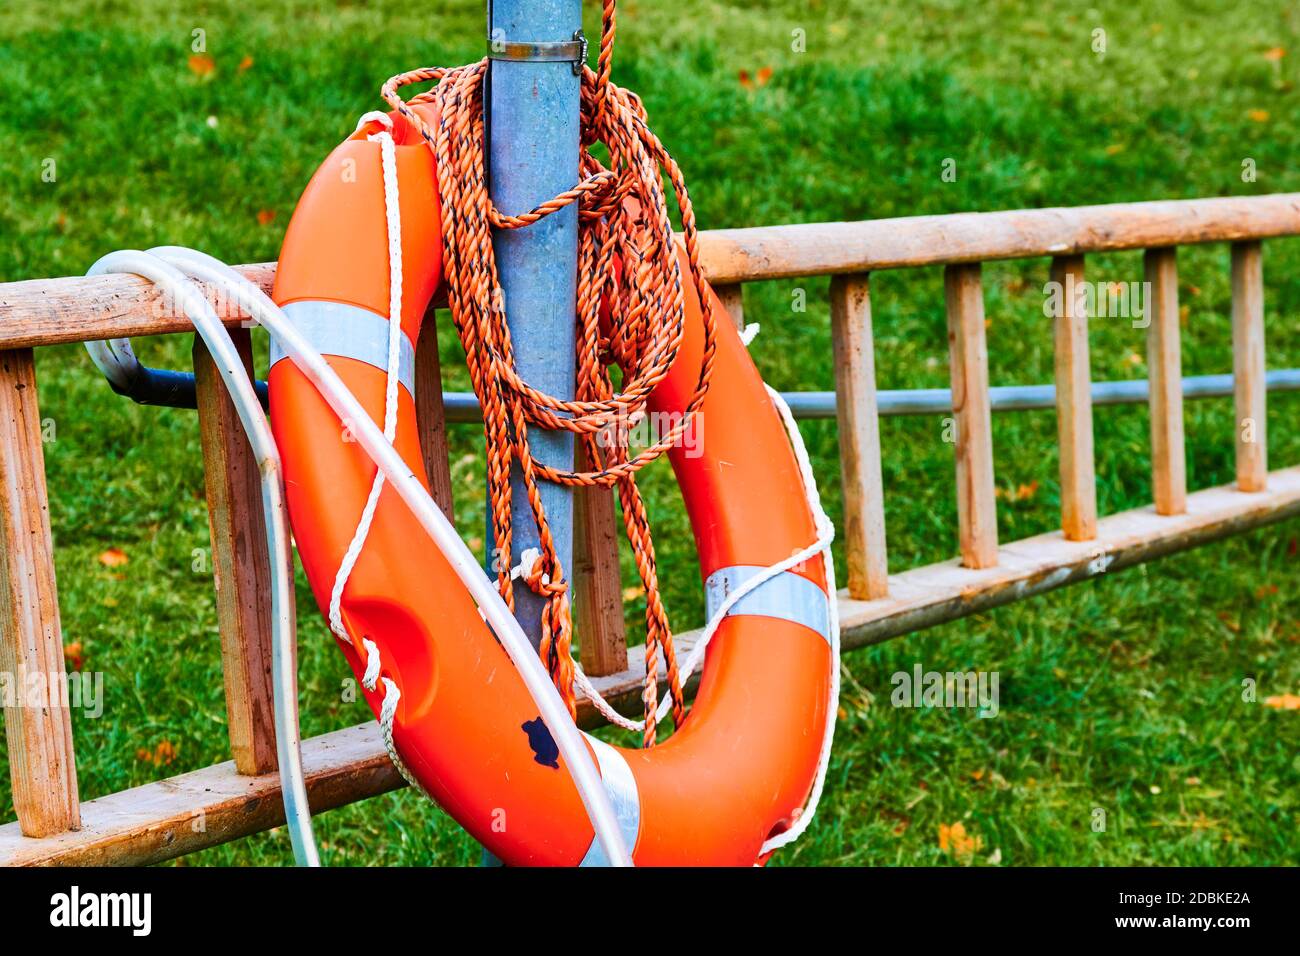 Leiter und orangefarbene Rettungsboje am Rande eines Sees in einem Park. Stockfoto